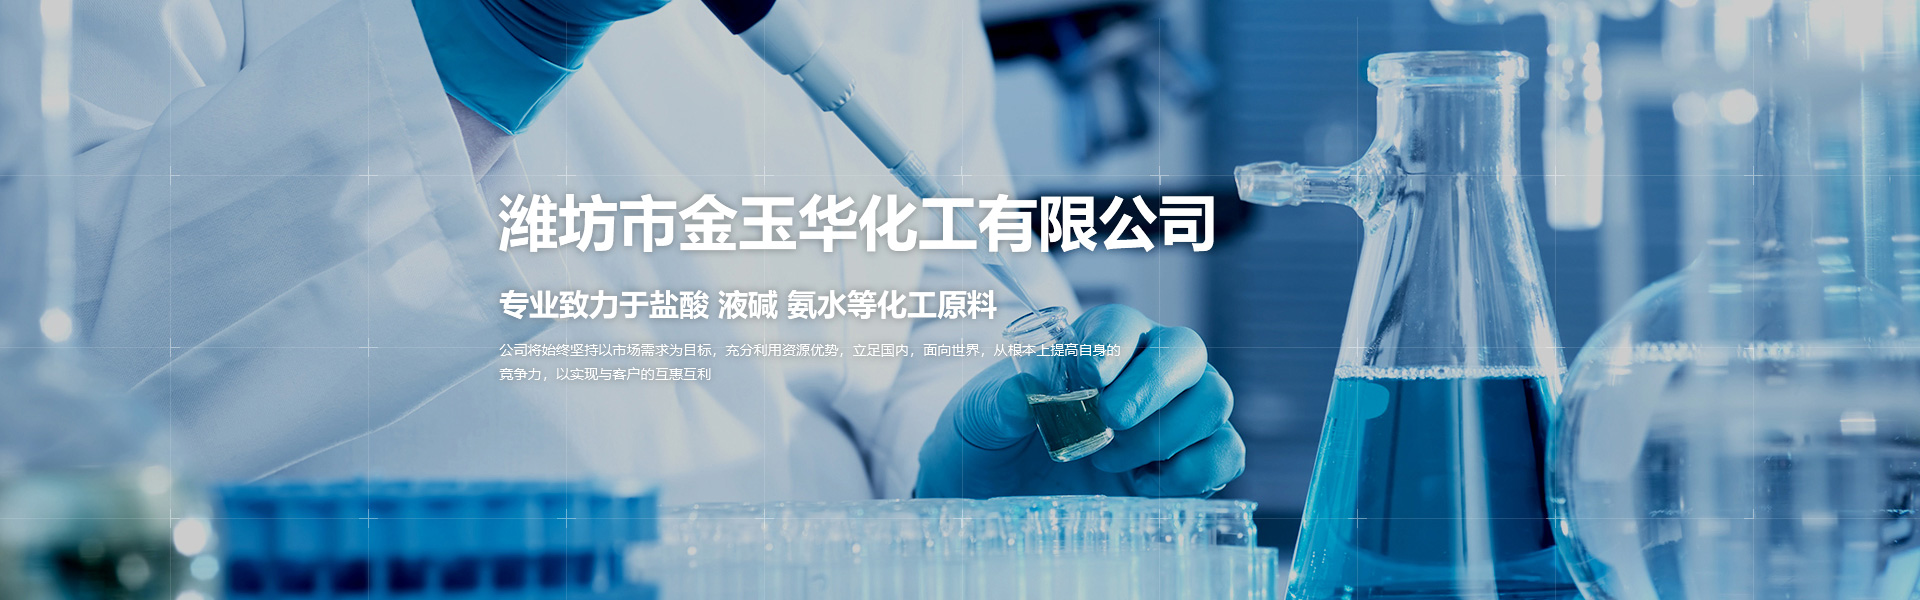 潍坊市金玉华化工有限公司，一家专业的工业液碱、优质氨水、工业氨水、工业盐酸等化工产品的生产、销售公司。